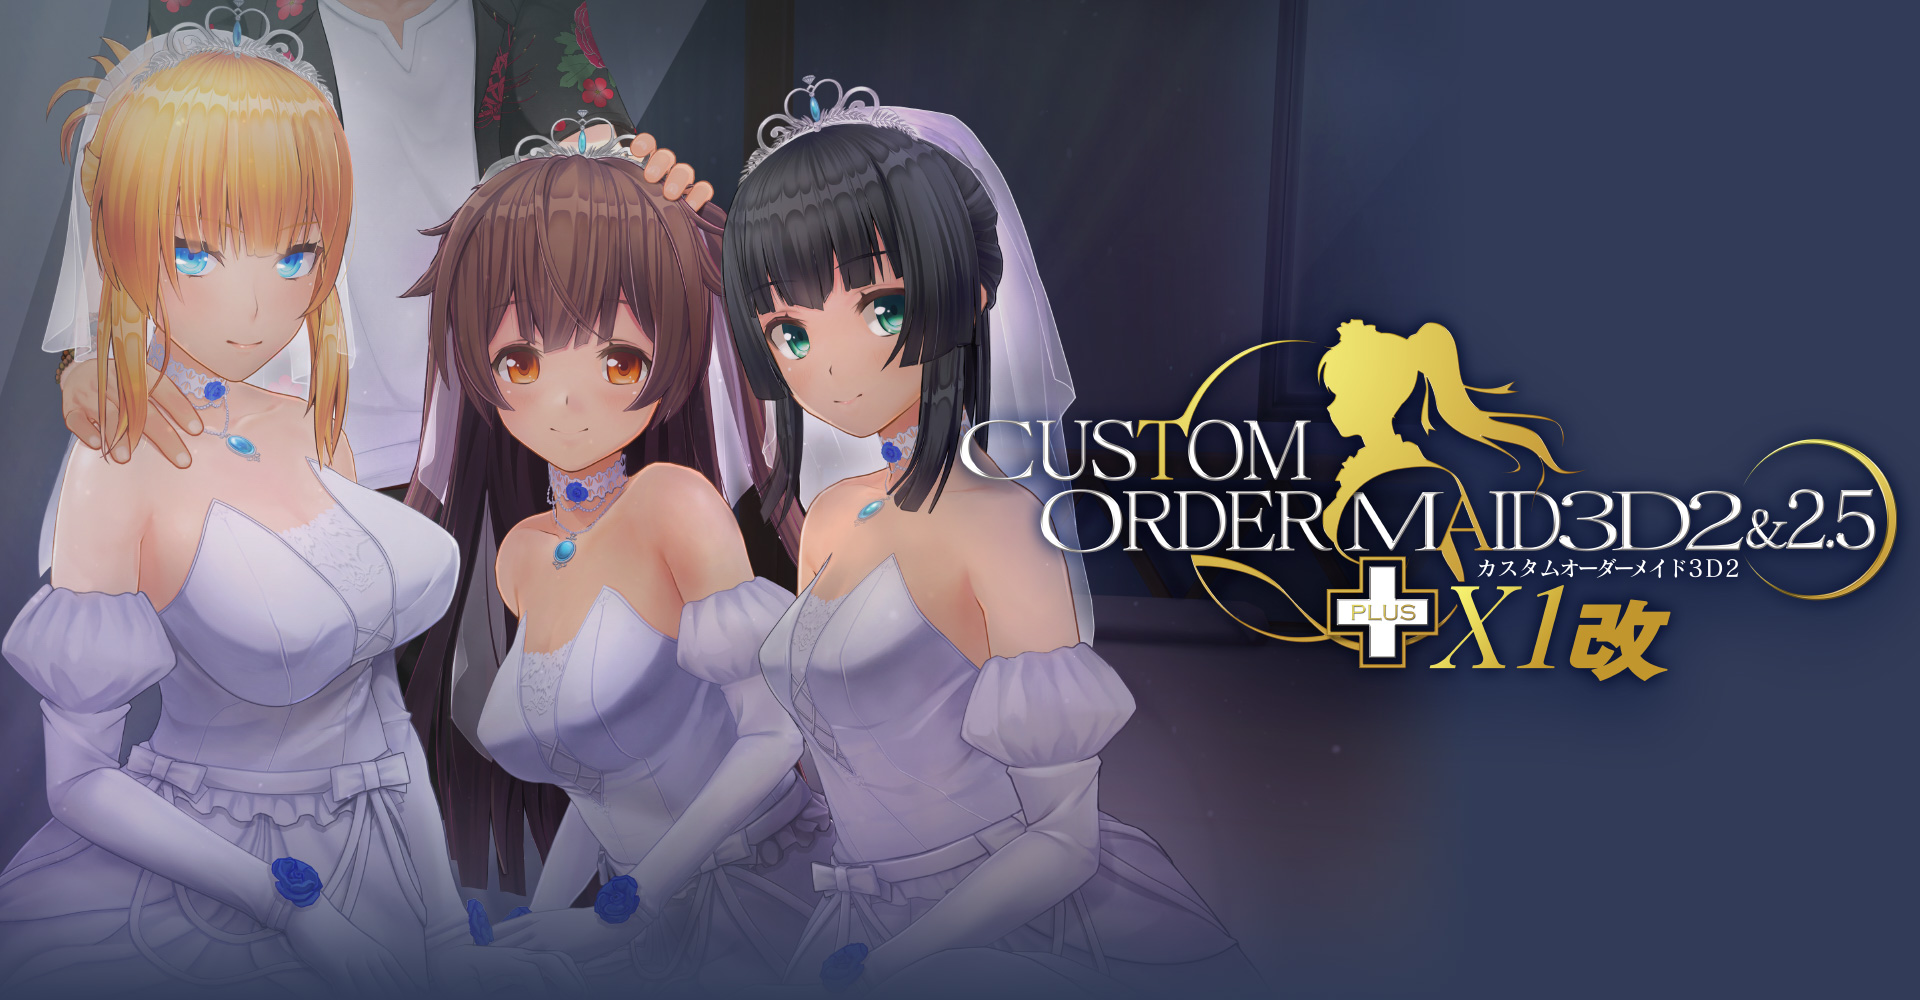 Custom order maid steam фото 17